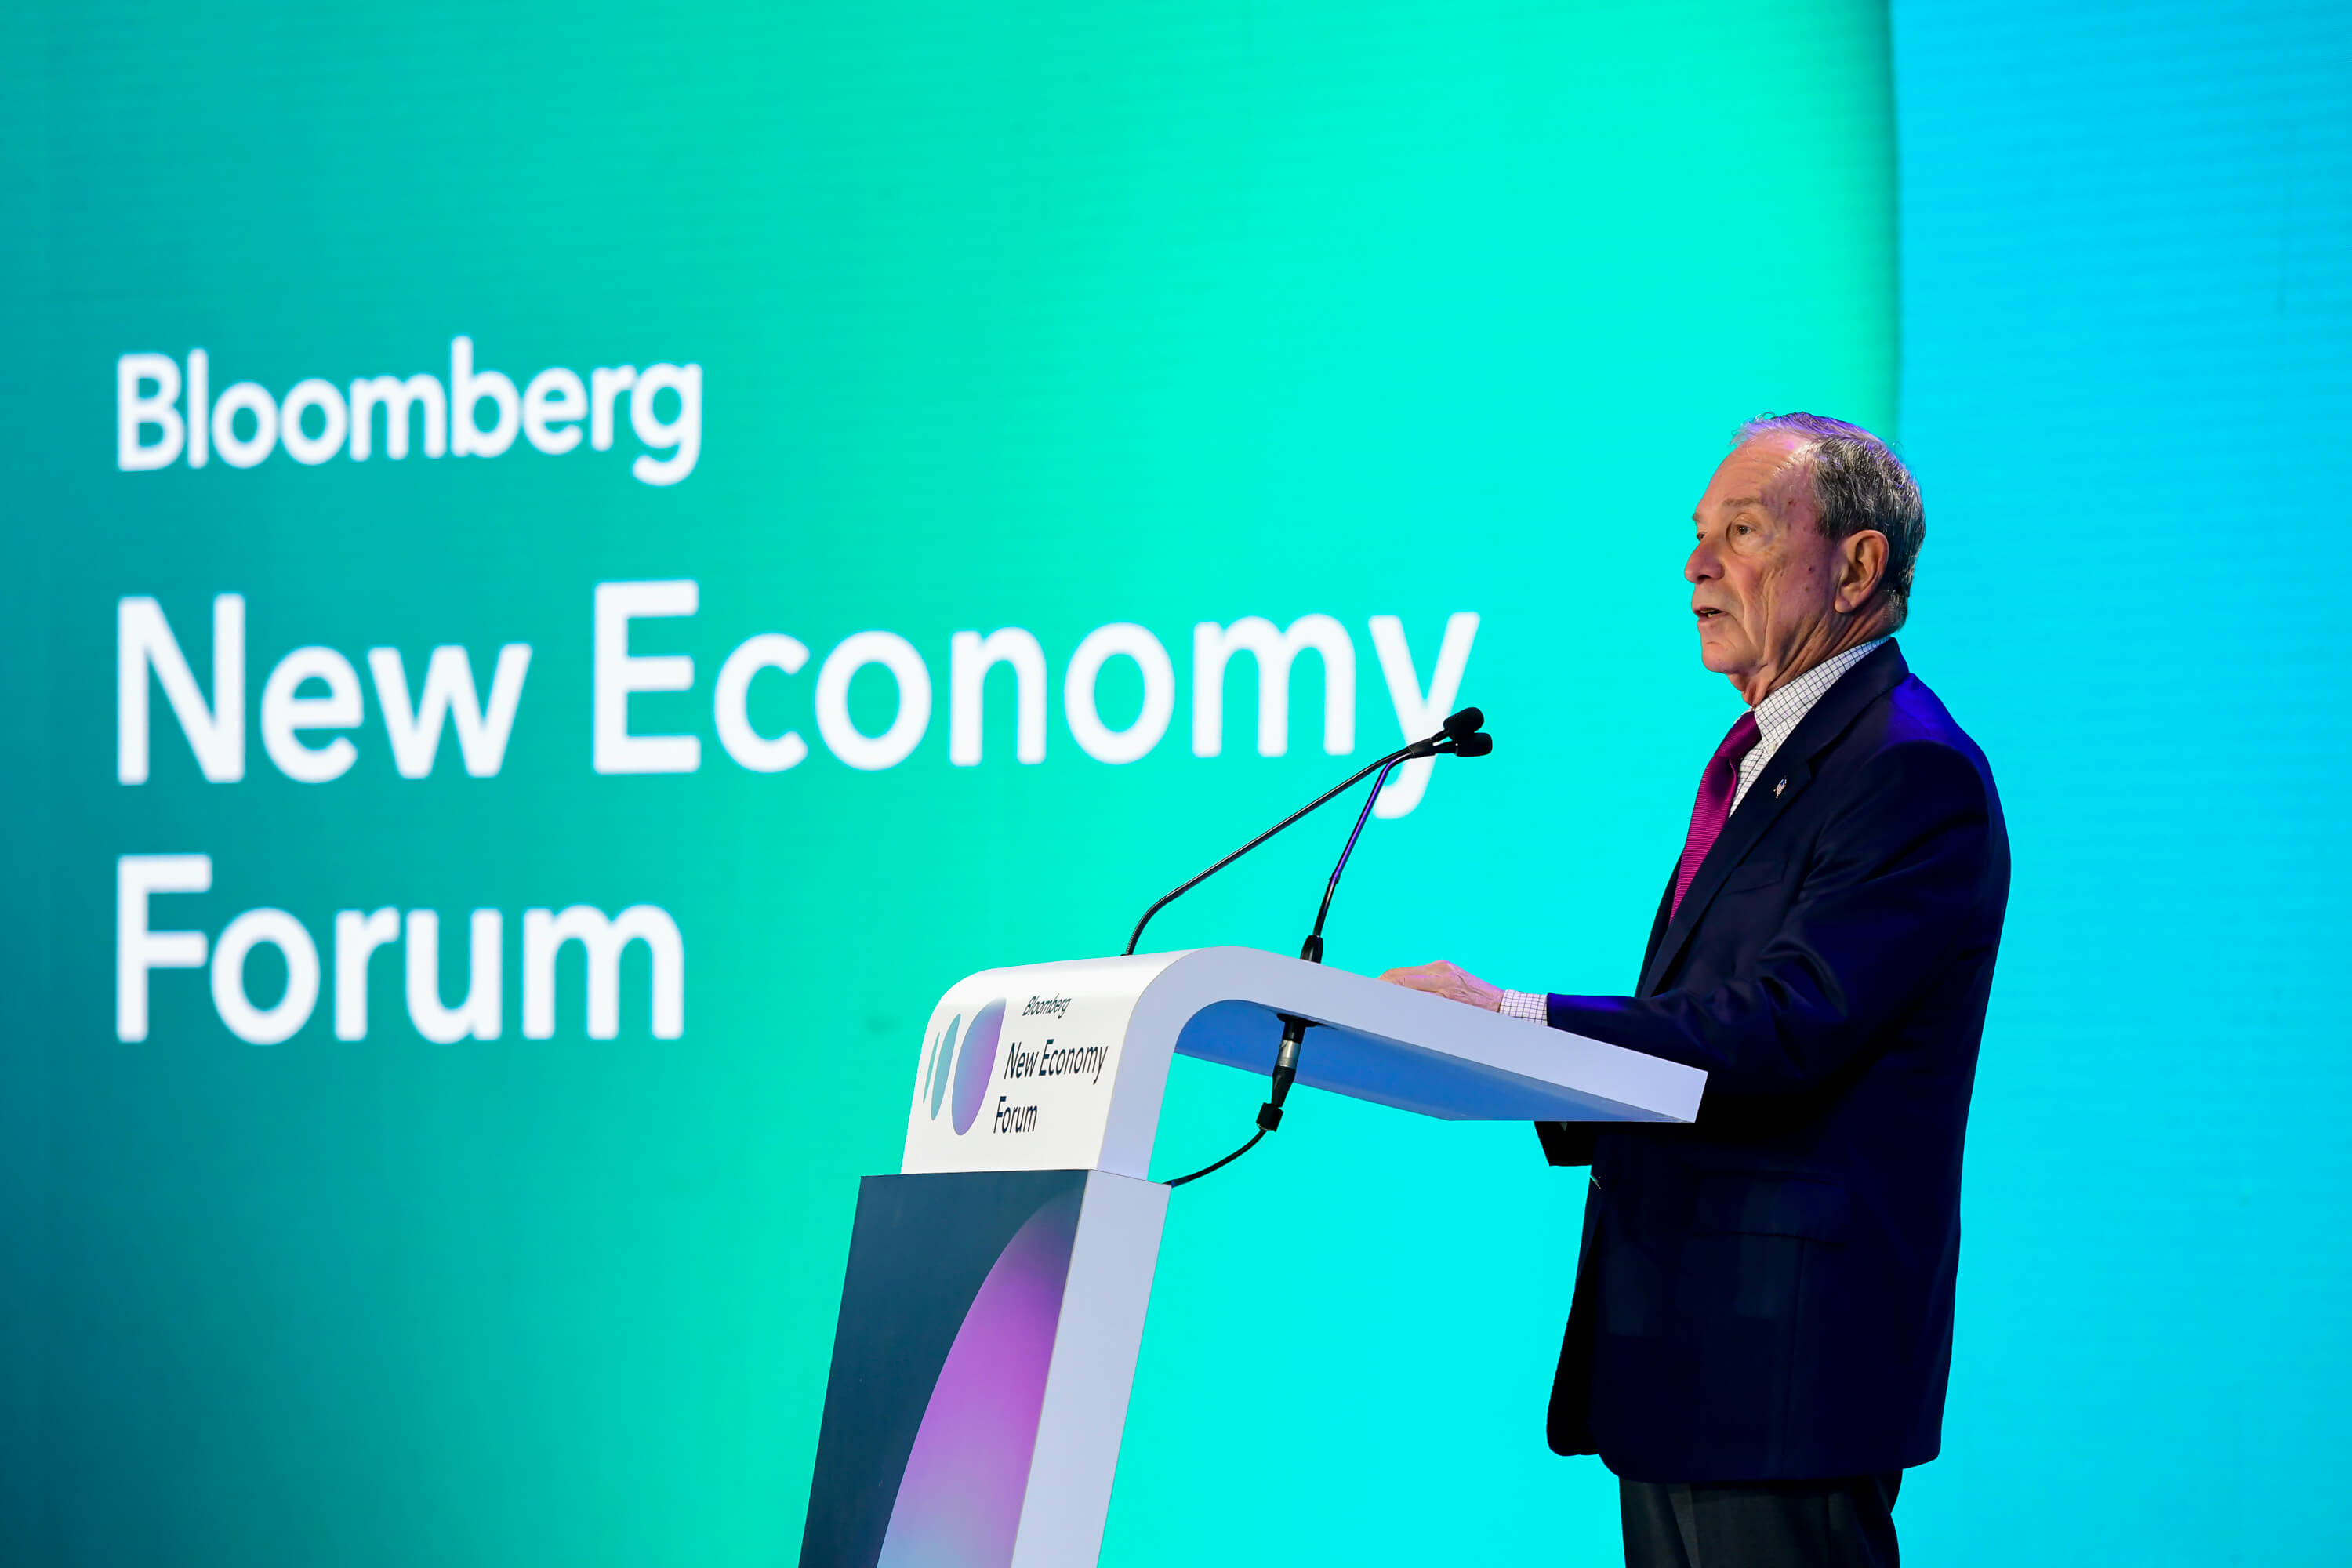 2018 New Economy Forum - Singapore | Bloomberg New Economy